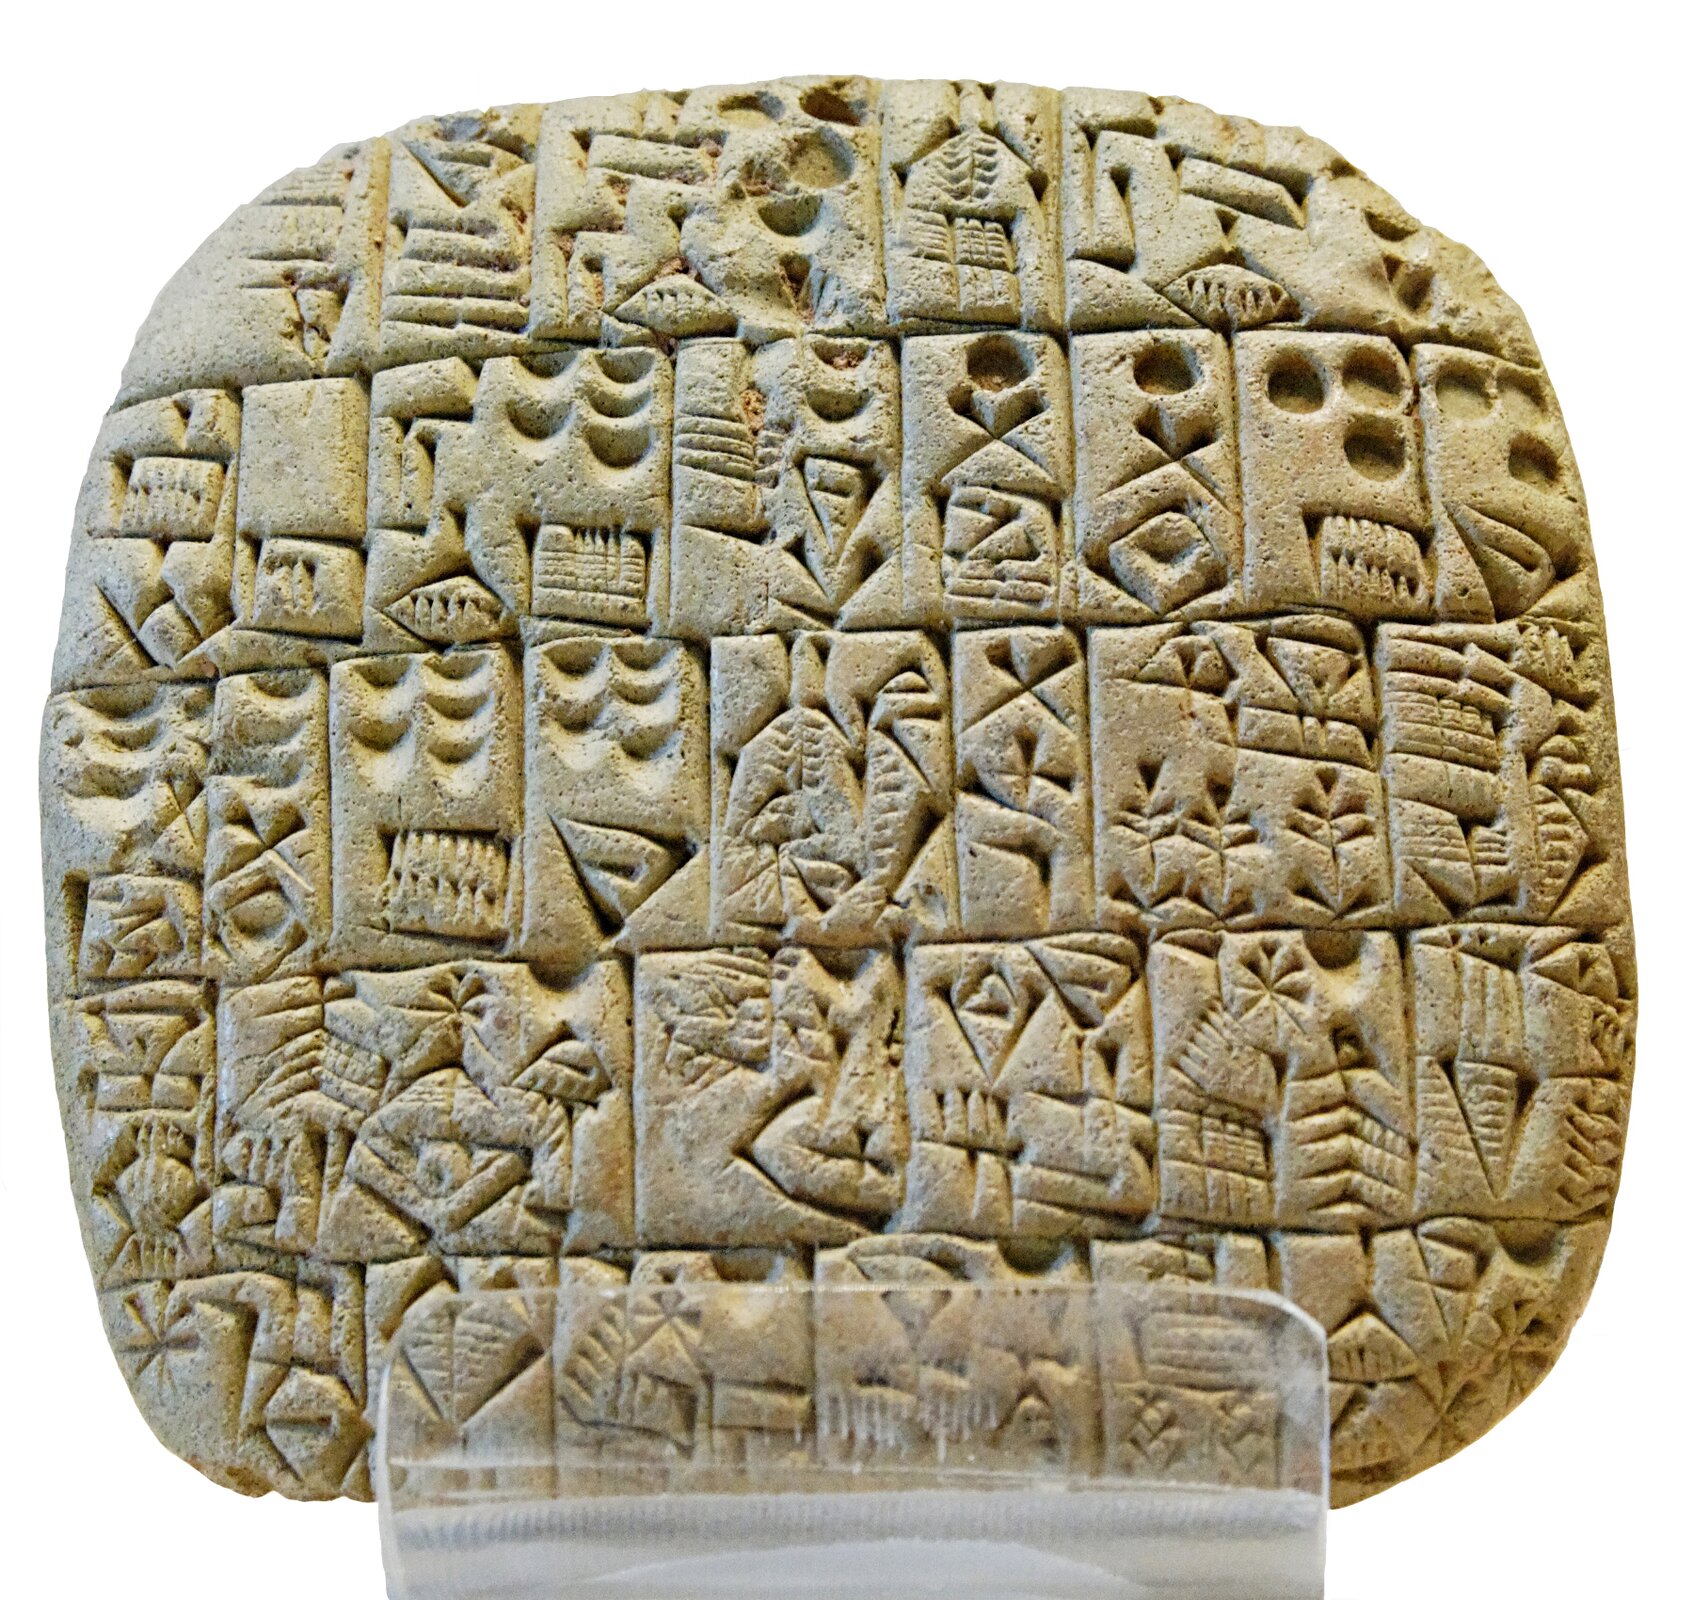 Zdjęcie przedstawiające prostokątną glinianą tabliczke, z łagodnie zaokrąglonymi rogami. Na niej wyryte są znaki - litery pisma sumeryjskiego.